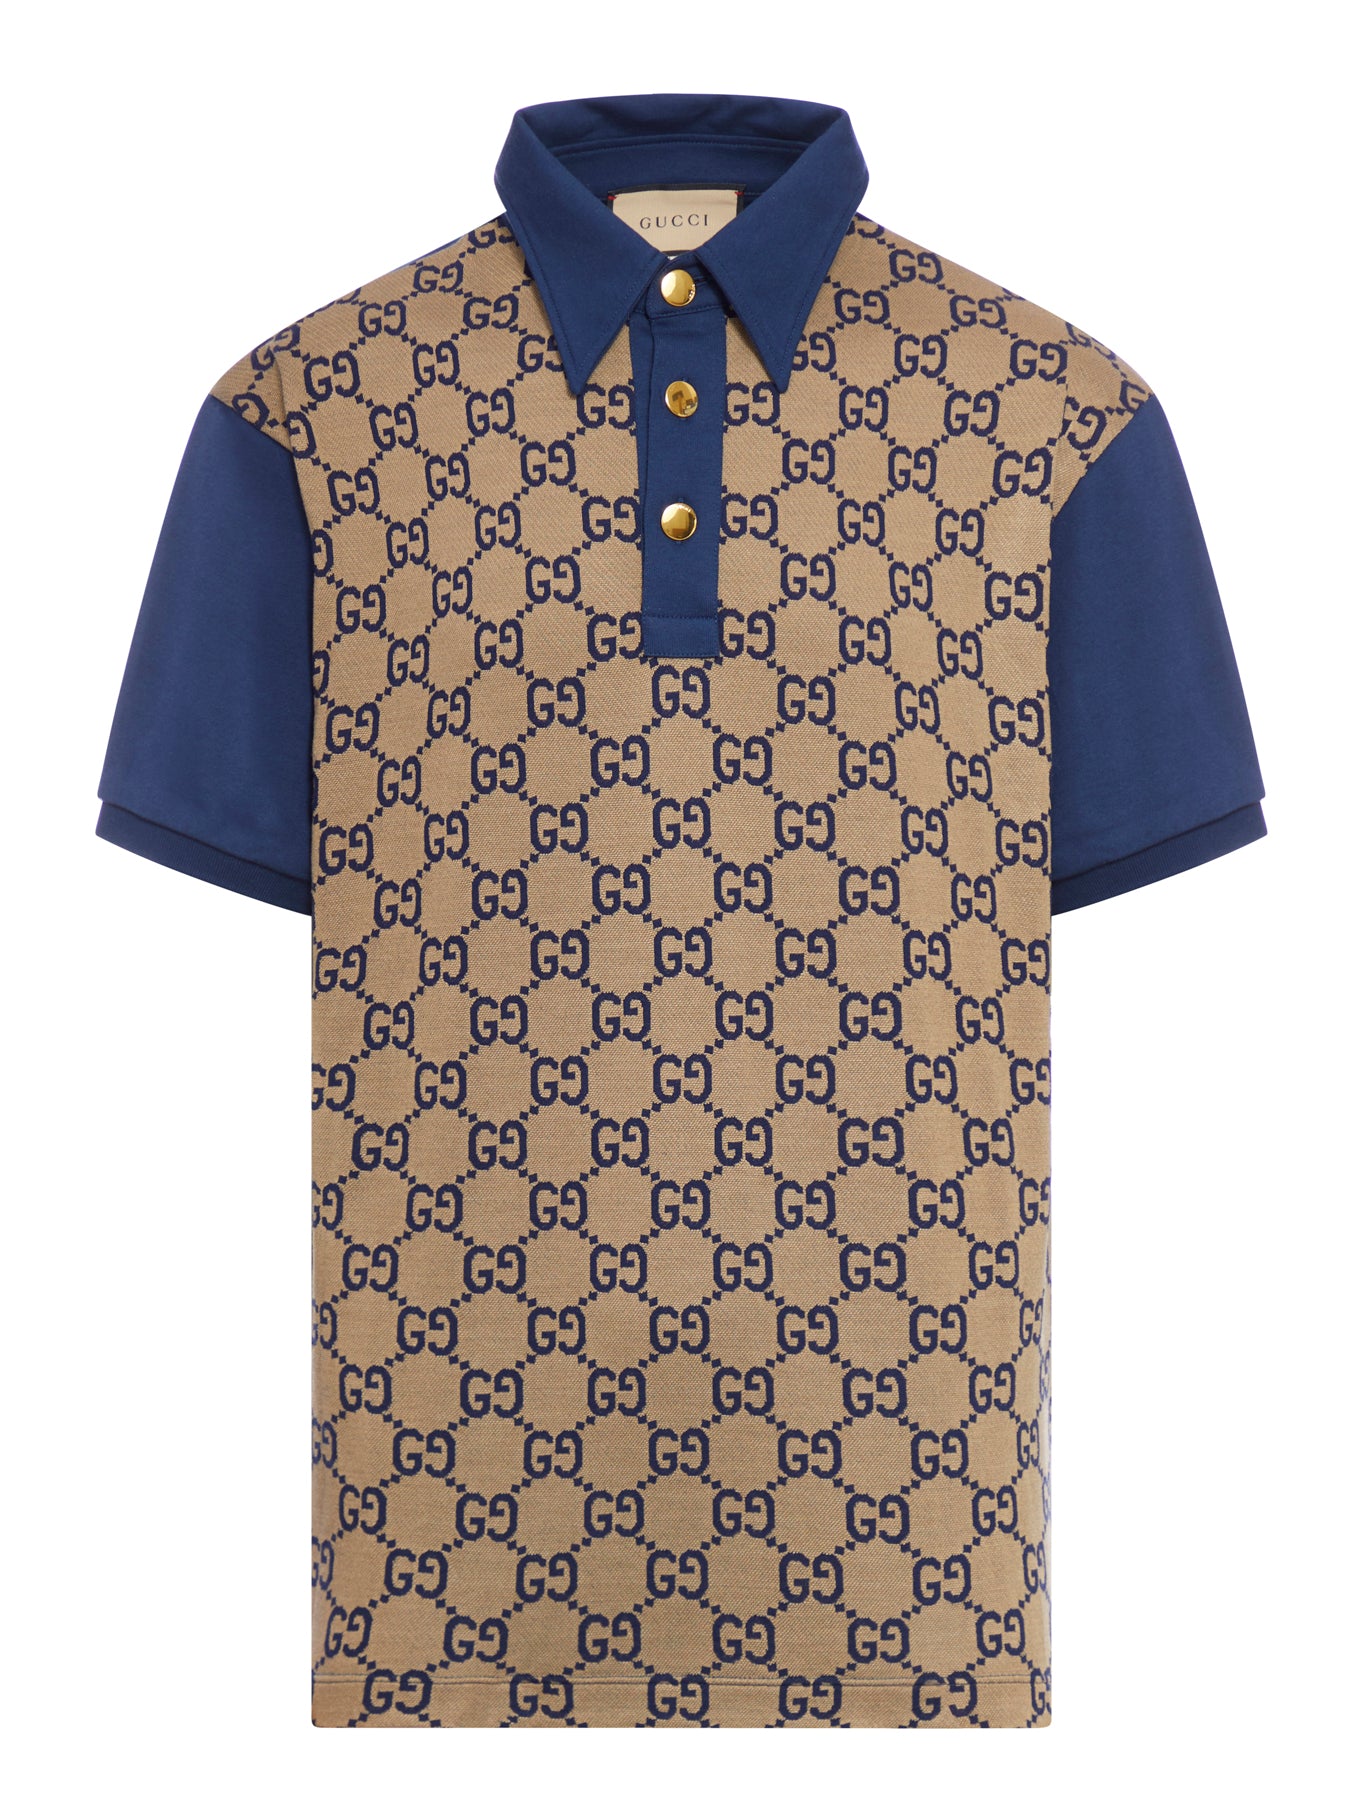 Cotton and silk polo shirt with maxi GG